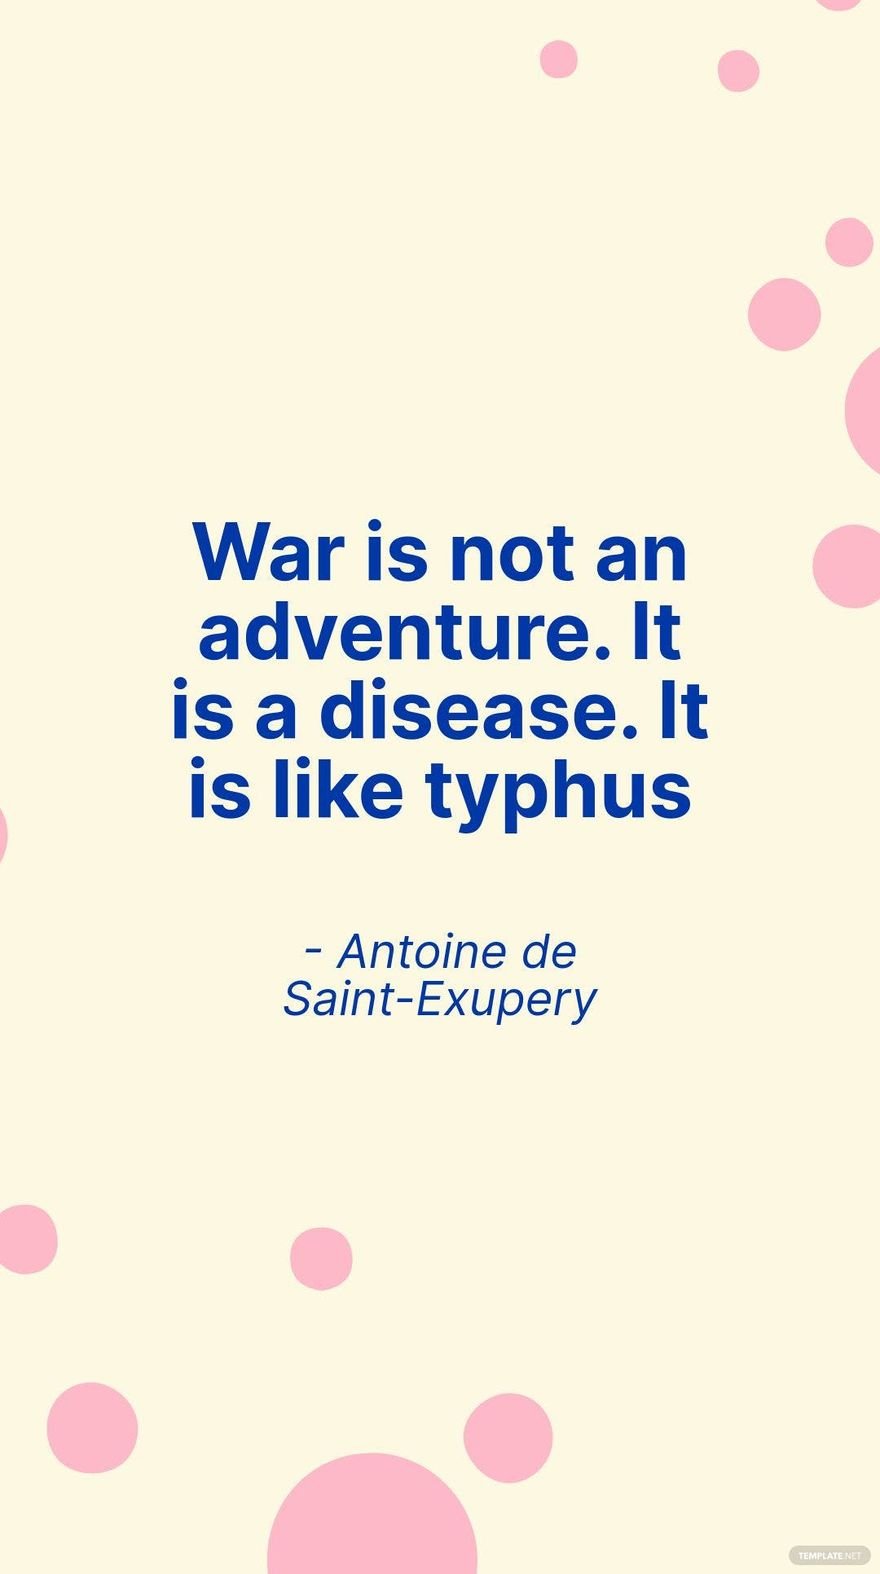 Antoine de Saint-Exupery - War is not an adventure. It is a disease. It is like typhus